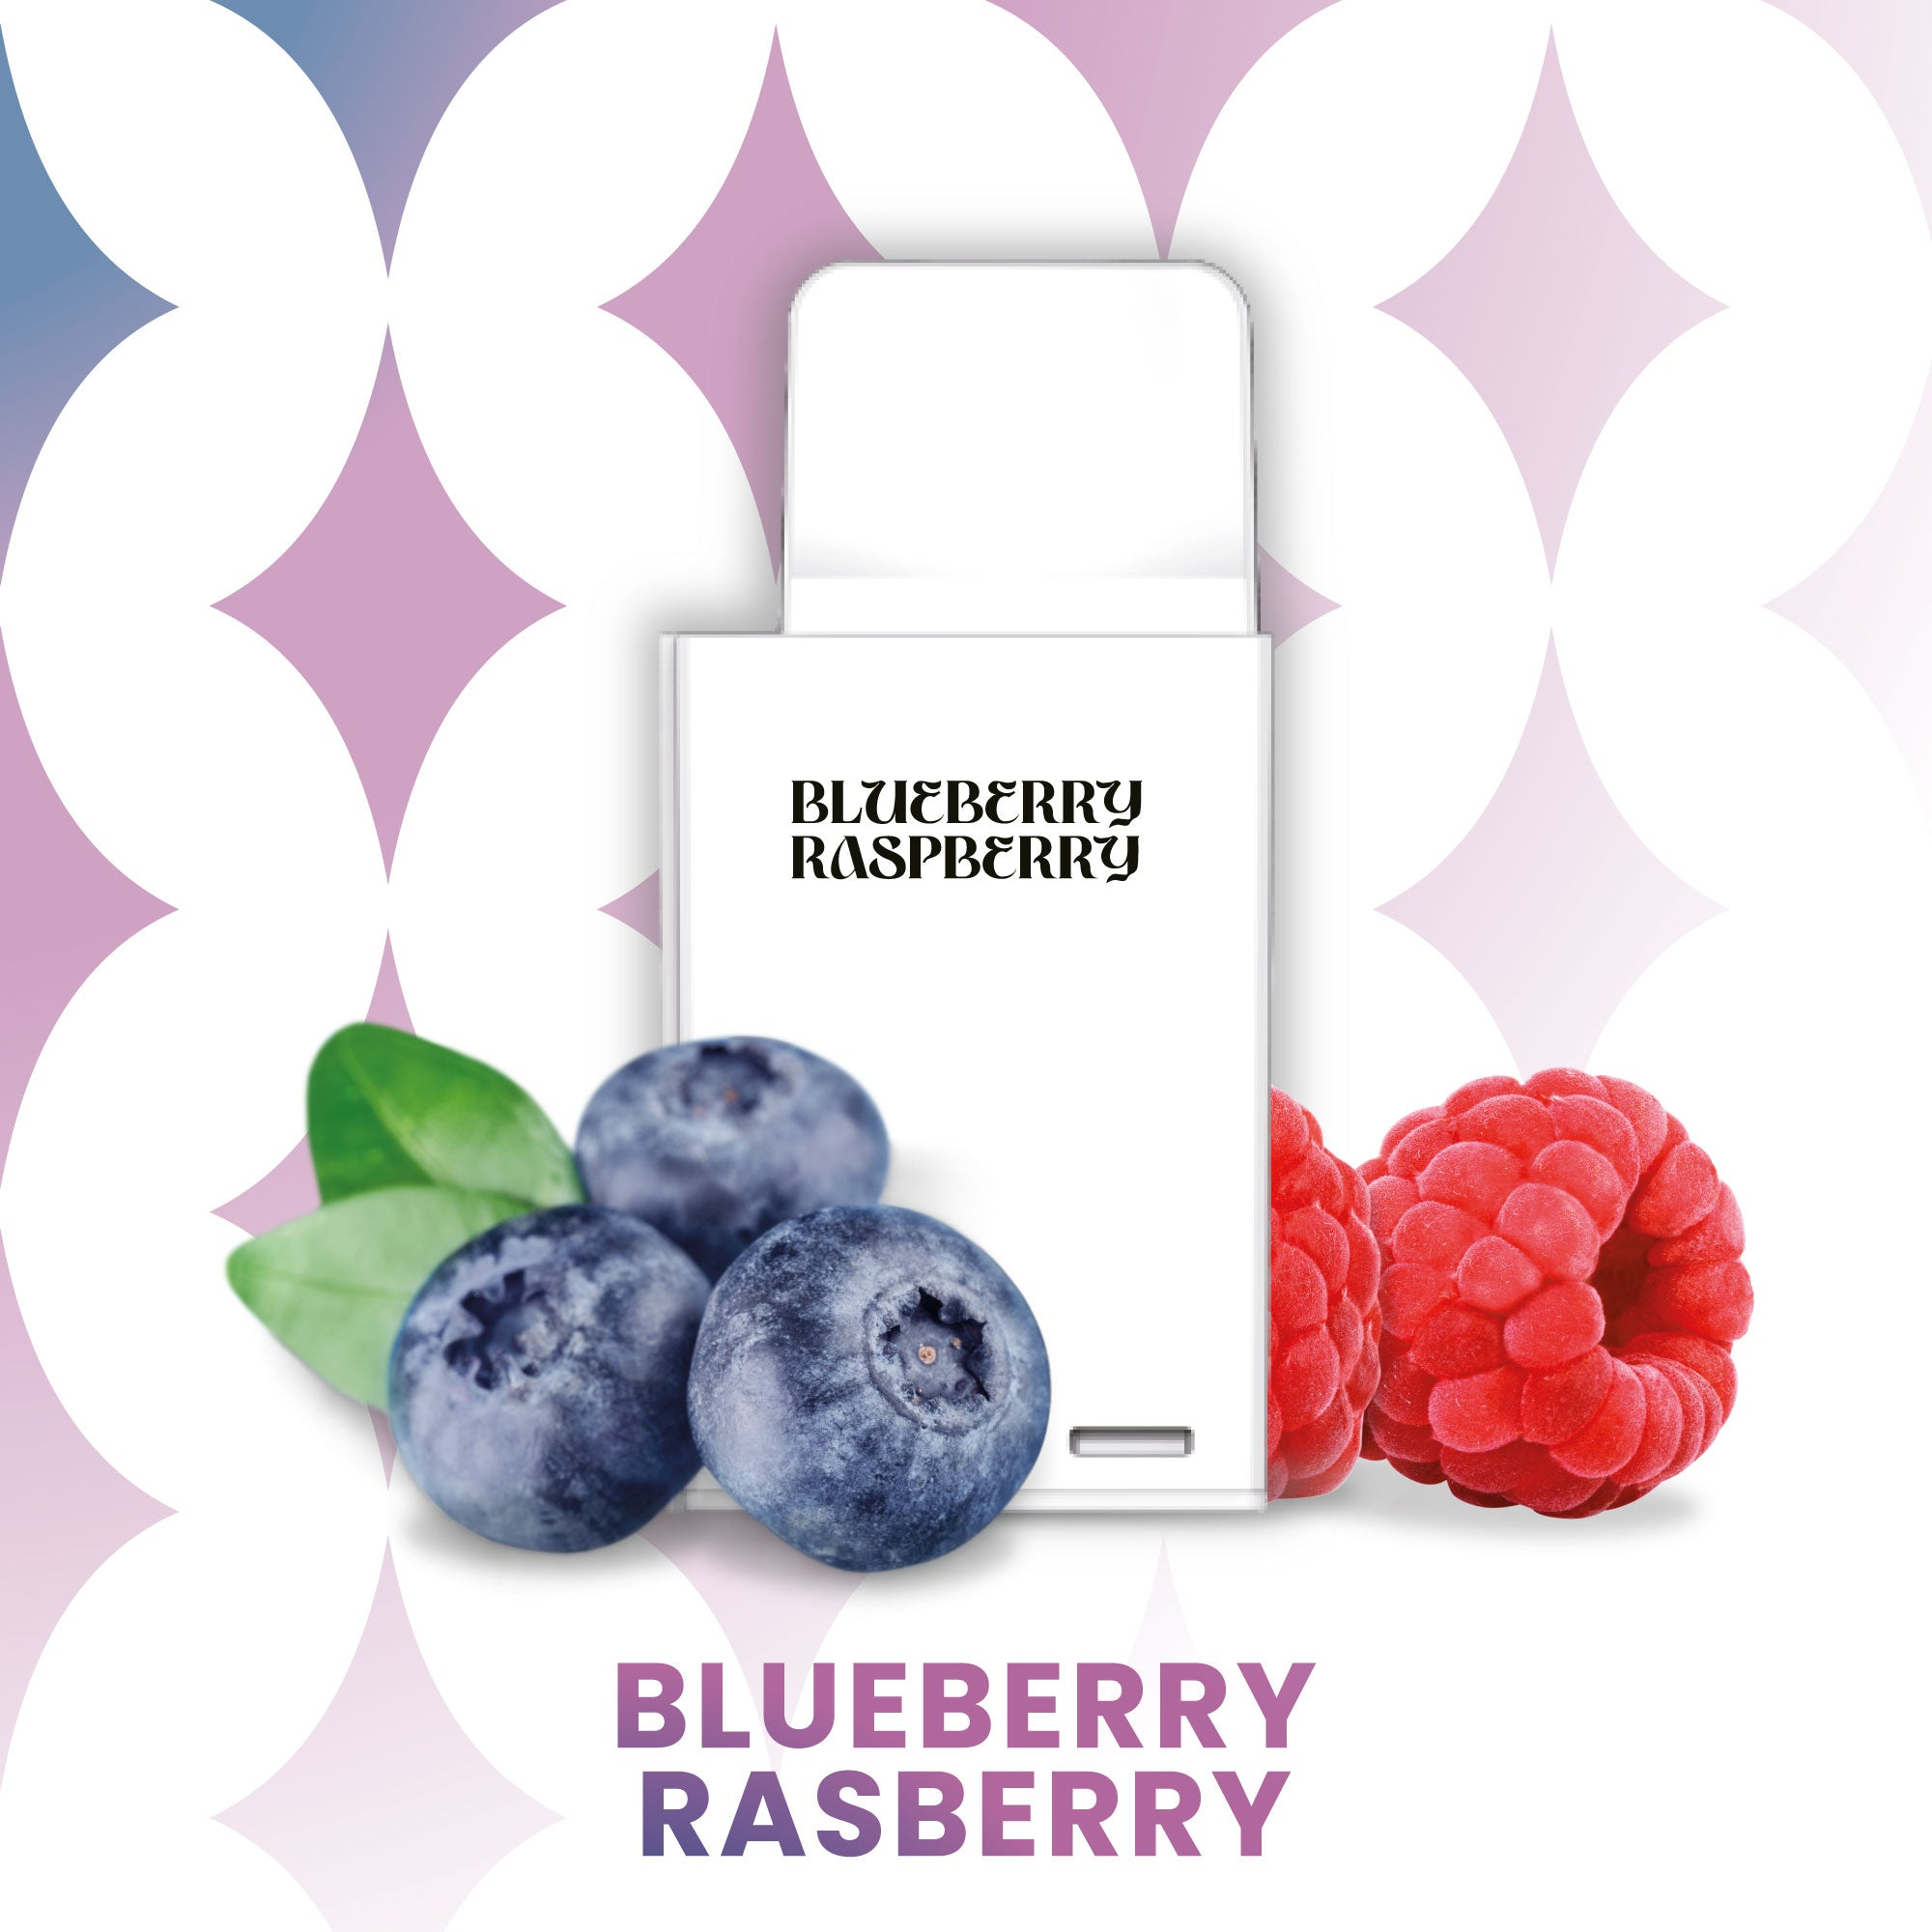 La Fume Cuatro - Pod - Blueberry Raspberry 2% Nikotin